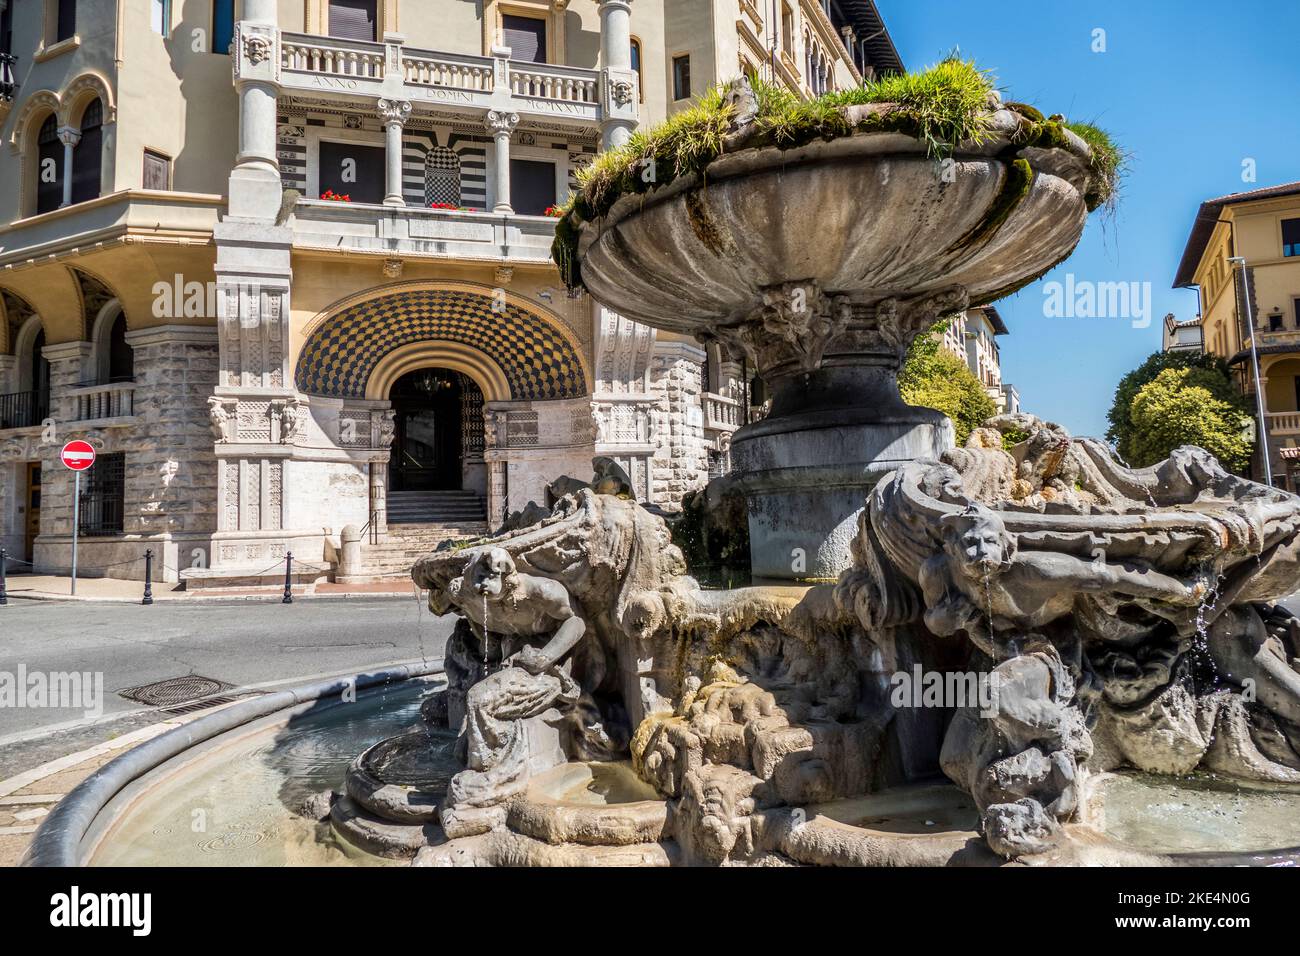 Roma, Italia - 04-12/2018: Le fontane delle rane nel quartiere Coppedè di Roma Foto Stock